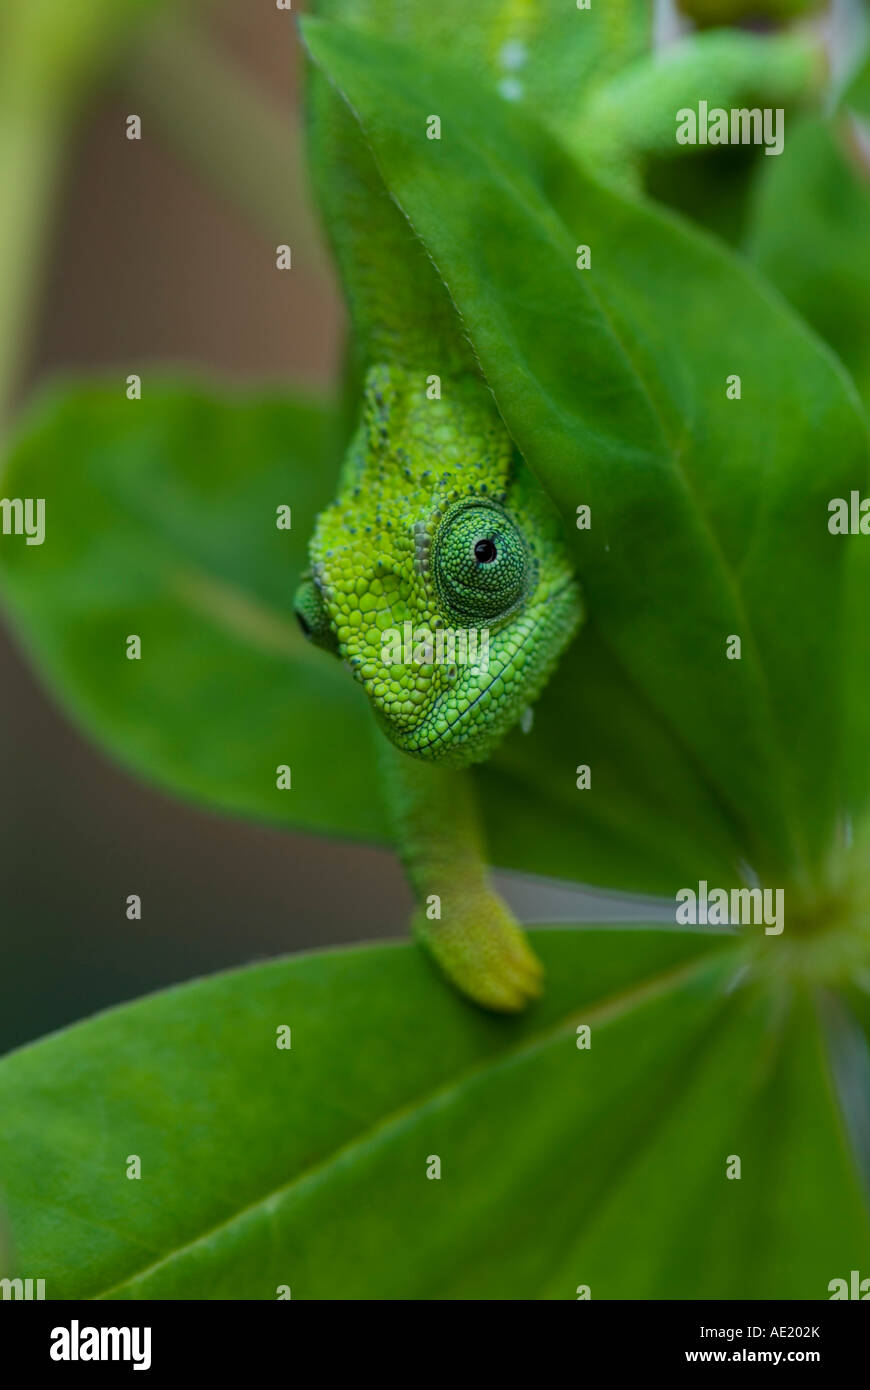 Green chameleon Stock Photo